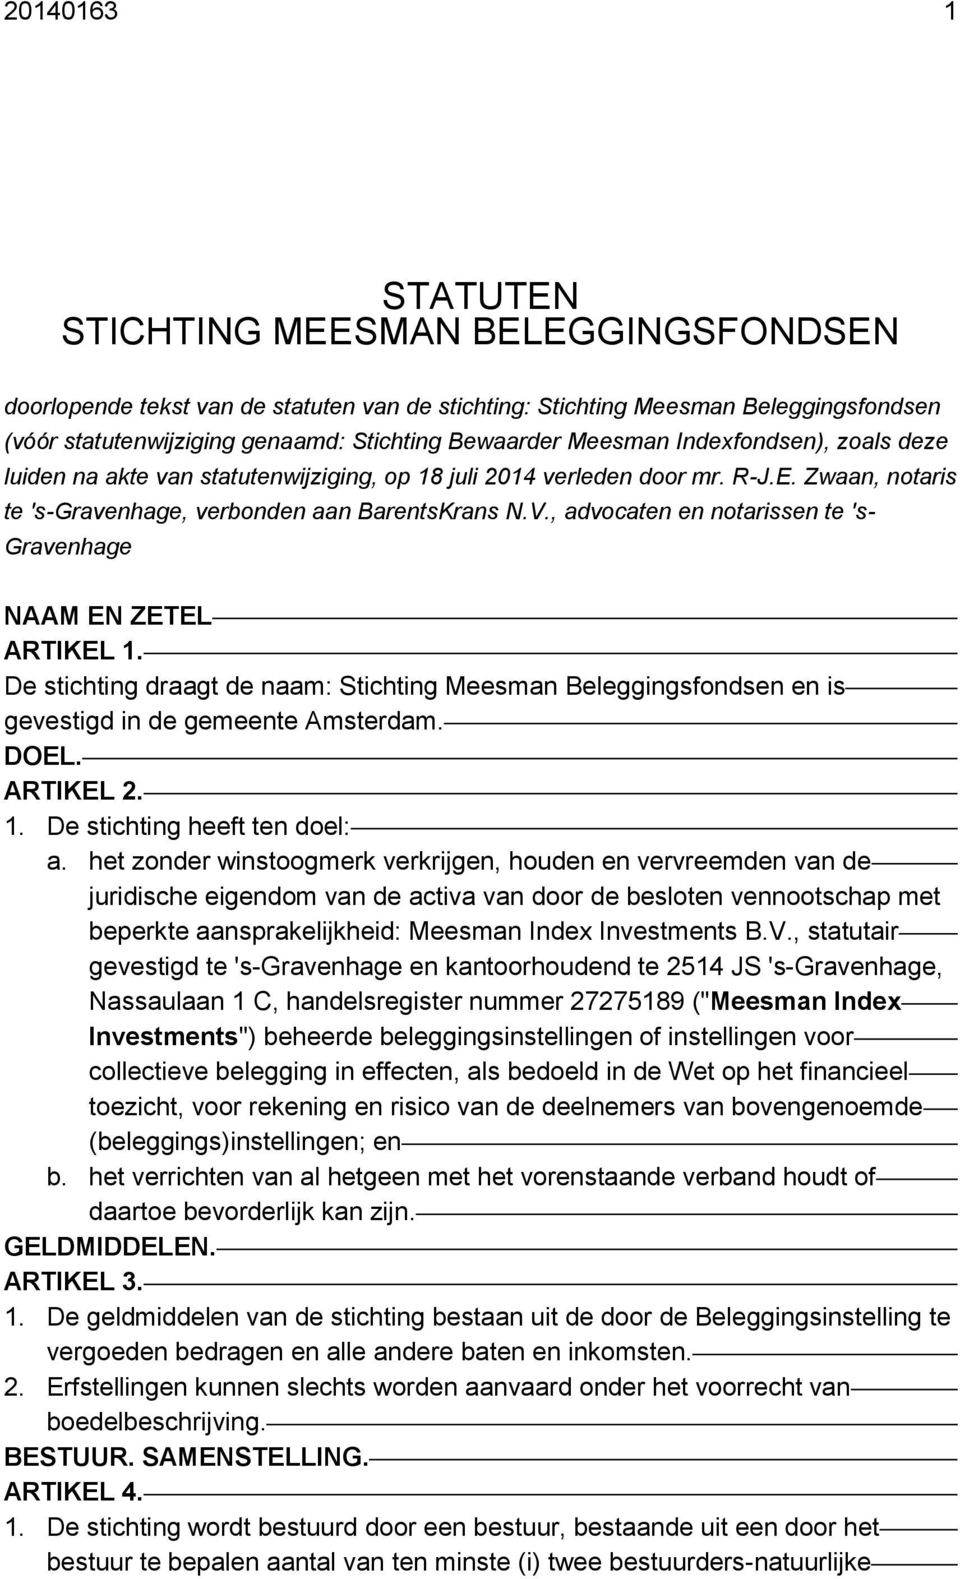 , advocaten en notarissen te 's- Gravenhage NAAM EN ZETEL ARTIKEL 1. De stichting draagt de naam: Stichting Meesman Beleggingsfondsen en is gevestigd in de gemeente Amsterdam. DOEL. ARTIKEL 2. 1. De stichting heeft ten doel: a.